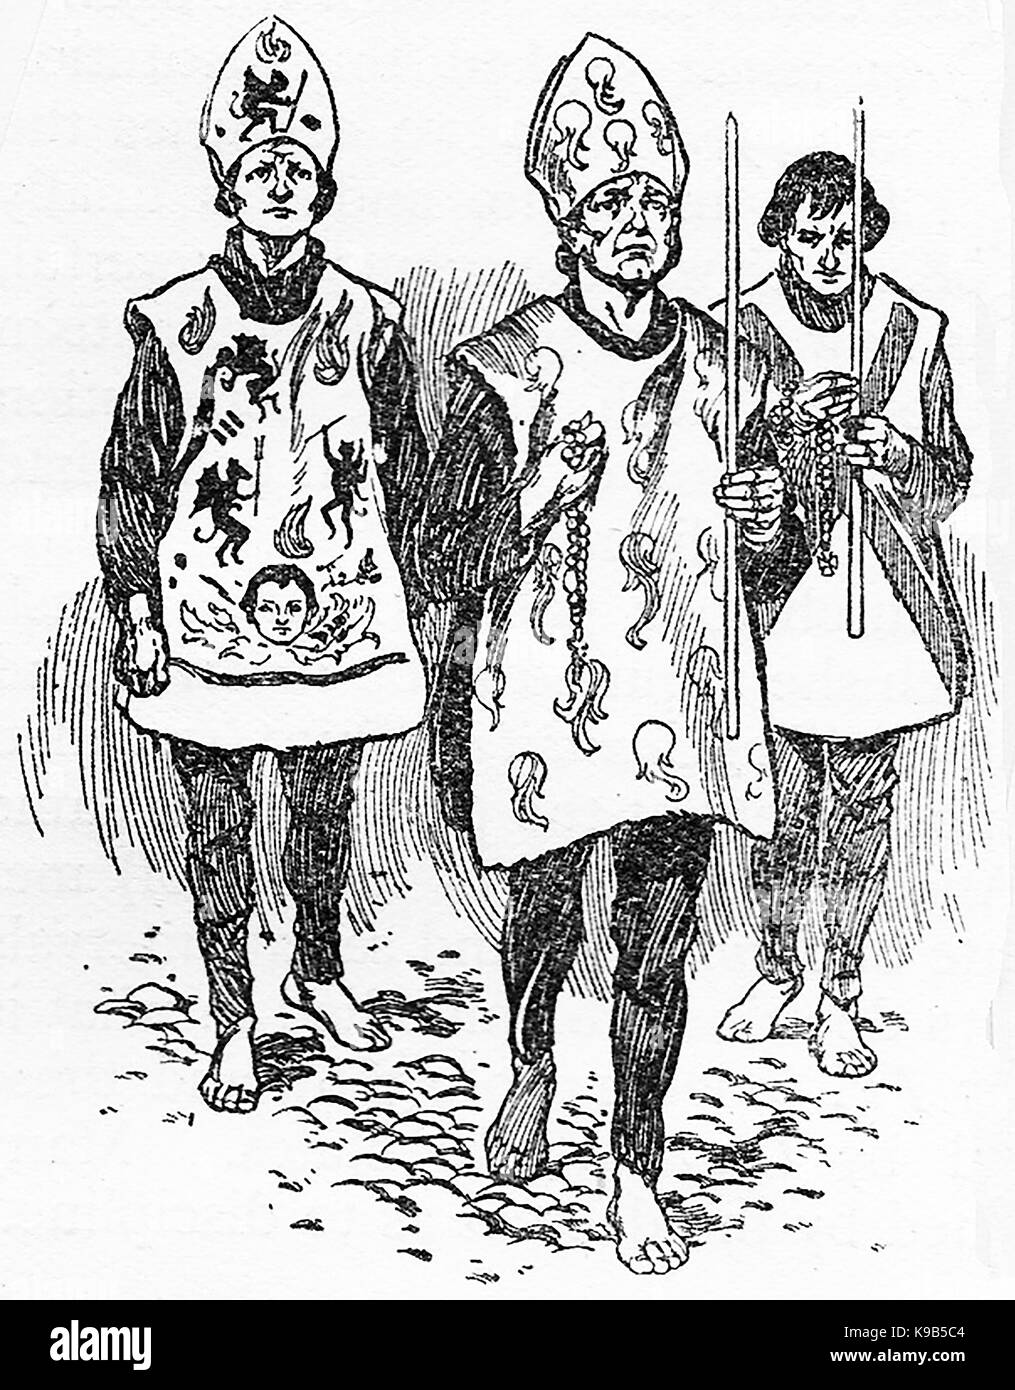 1910 Une illustration montrant différents styles de vêtement de pénitence religieuse connue sous le nom de San Benito. aka Sanbenito utilisé pour les hérétiques, principalement en Espagne Banque D'Images